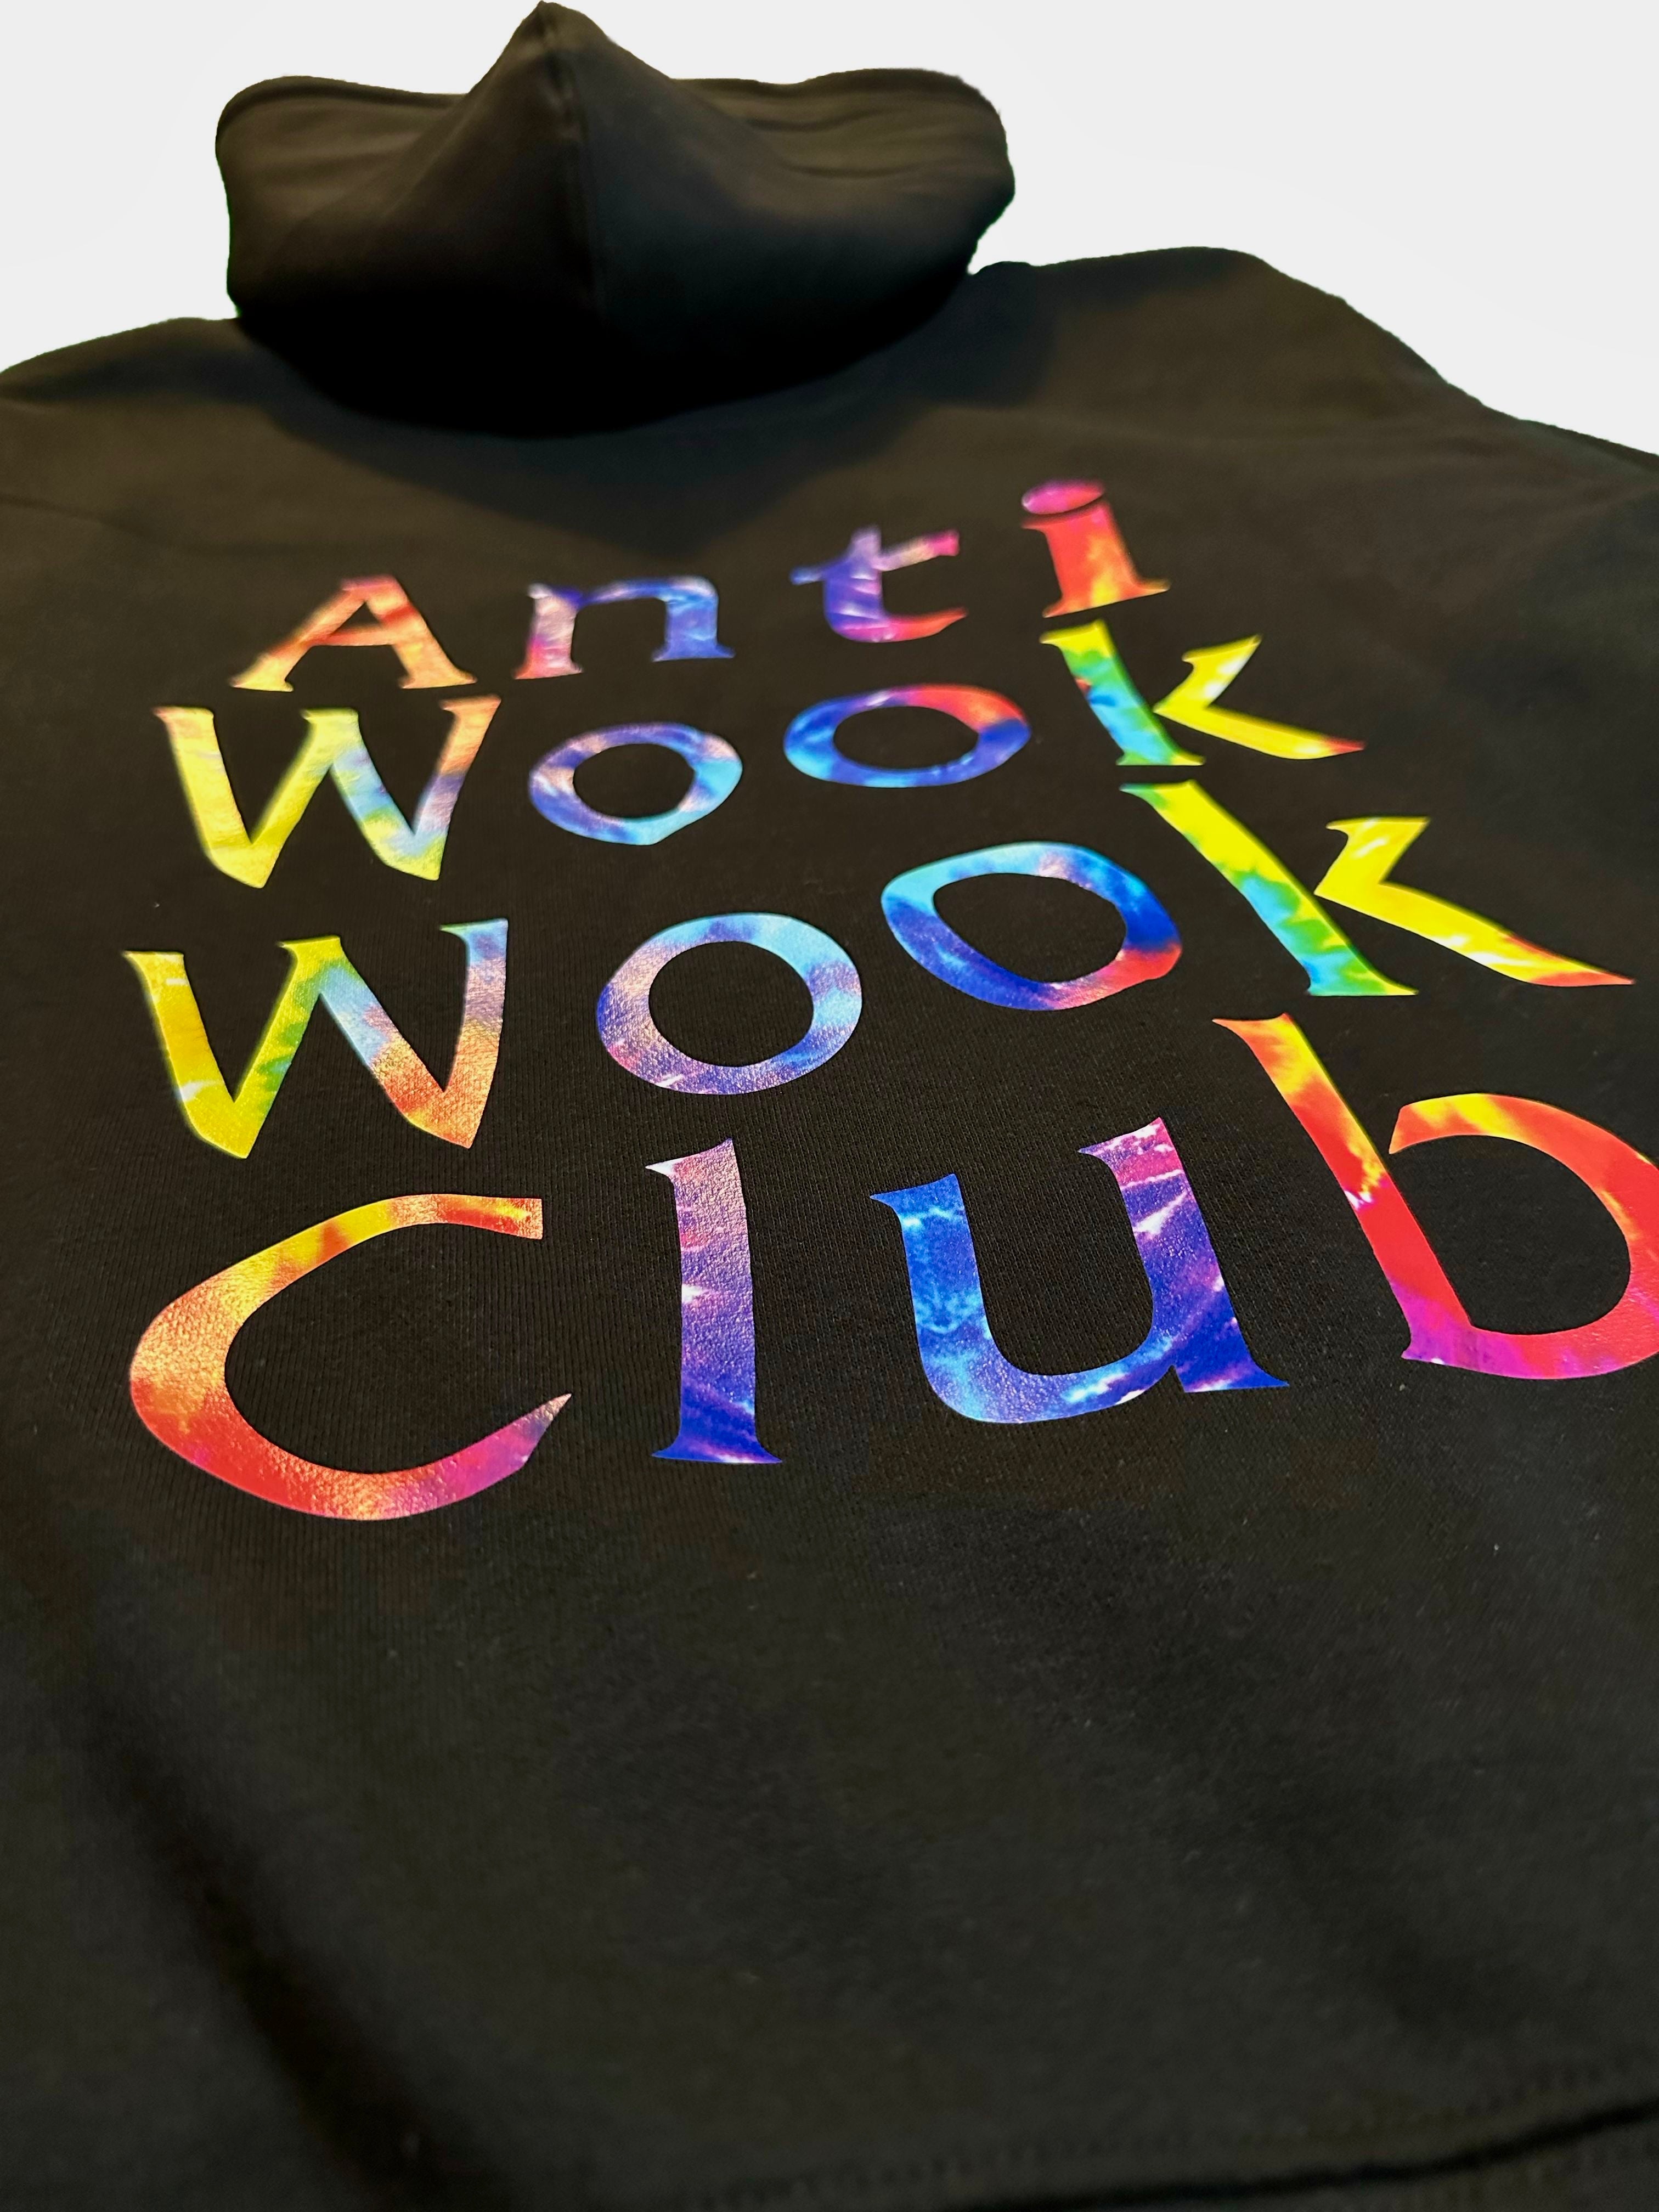 Anti Wook Wook Club - Premium Hoodie